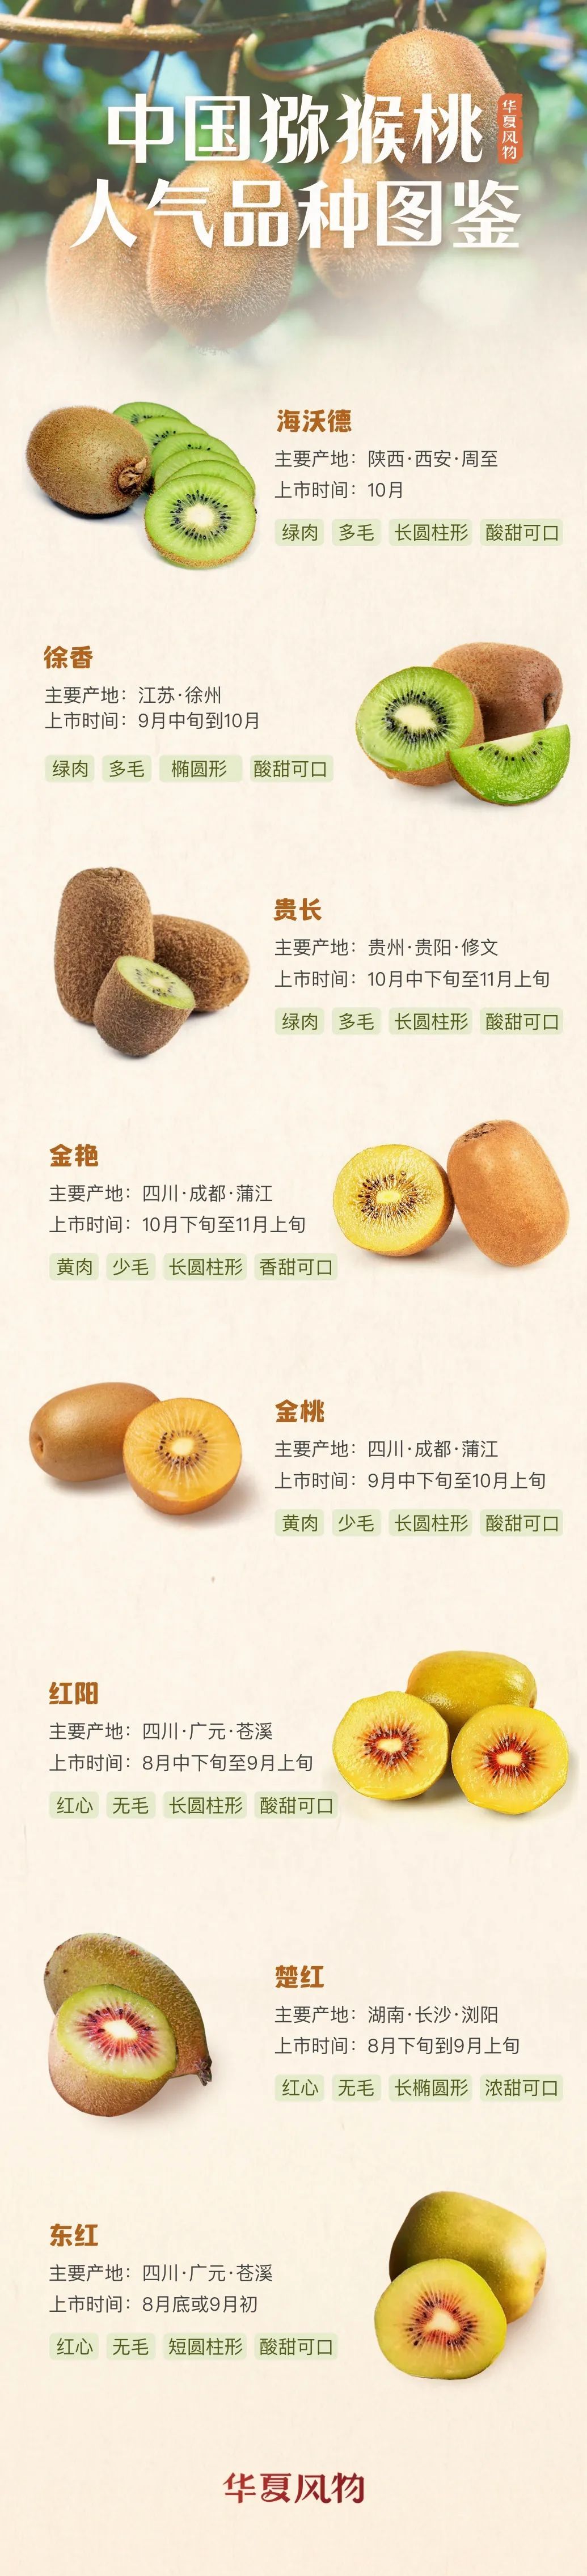 中国猕猴桃人气品种图鉴 ©️华夏风物